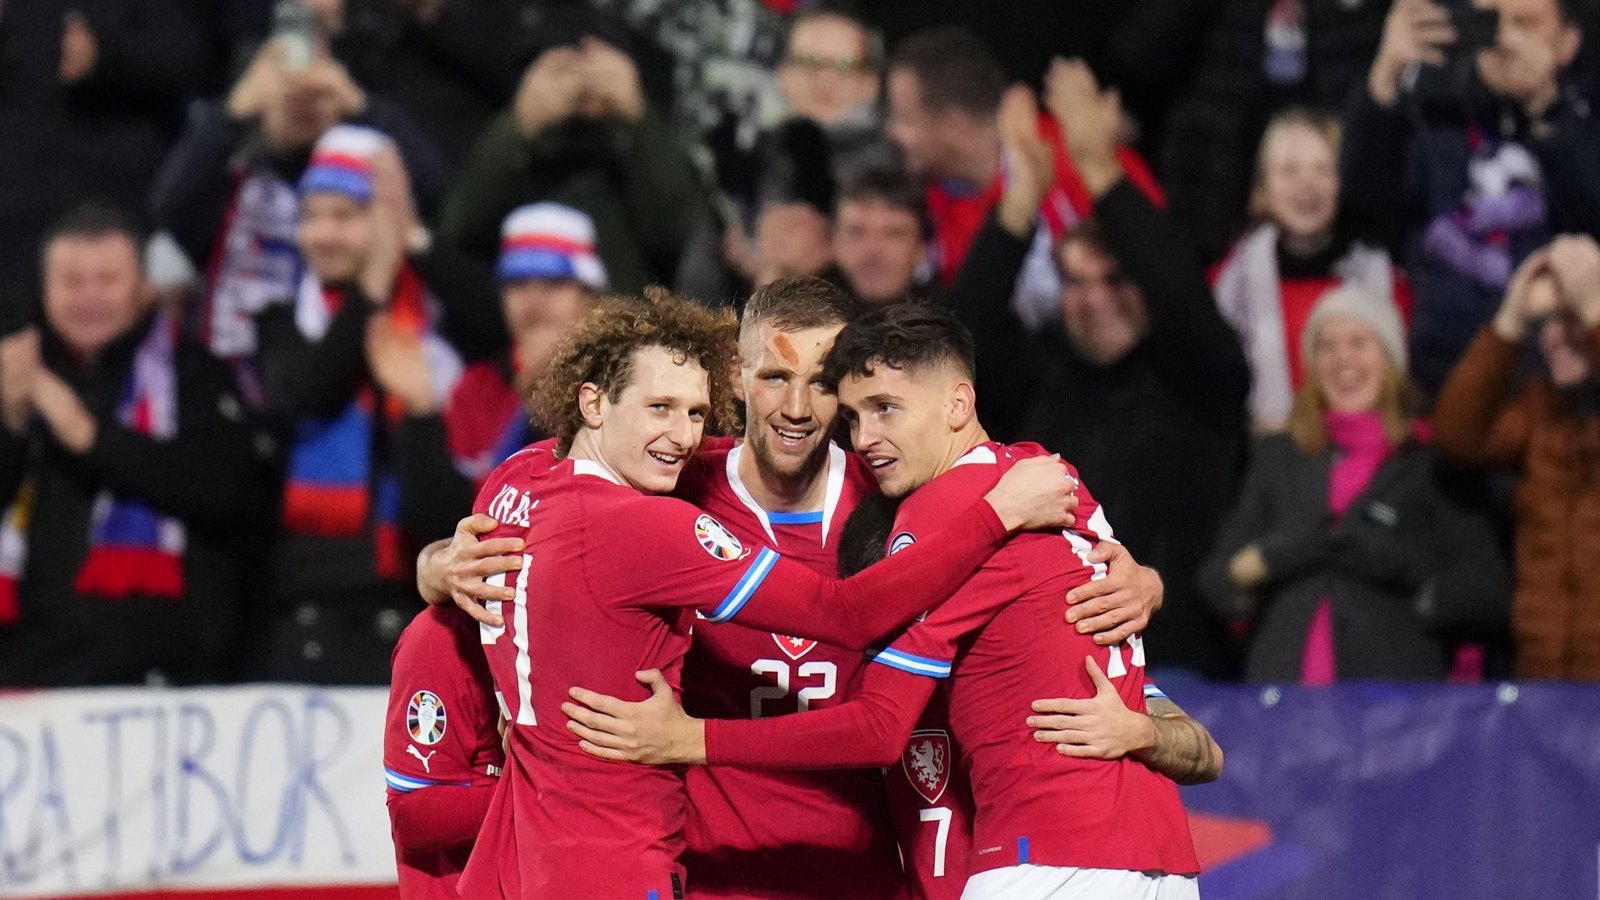 Die Spieler aus Tschechien jubelten mit Tomas Soucek (Mitte) nach seinem Tor, dem dritten Treffer ihres Teams.Foto: dpa/Petr David Josek